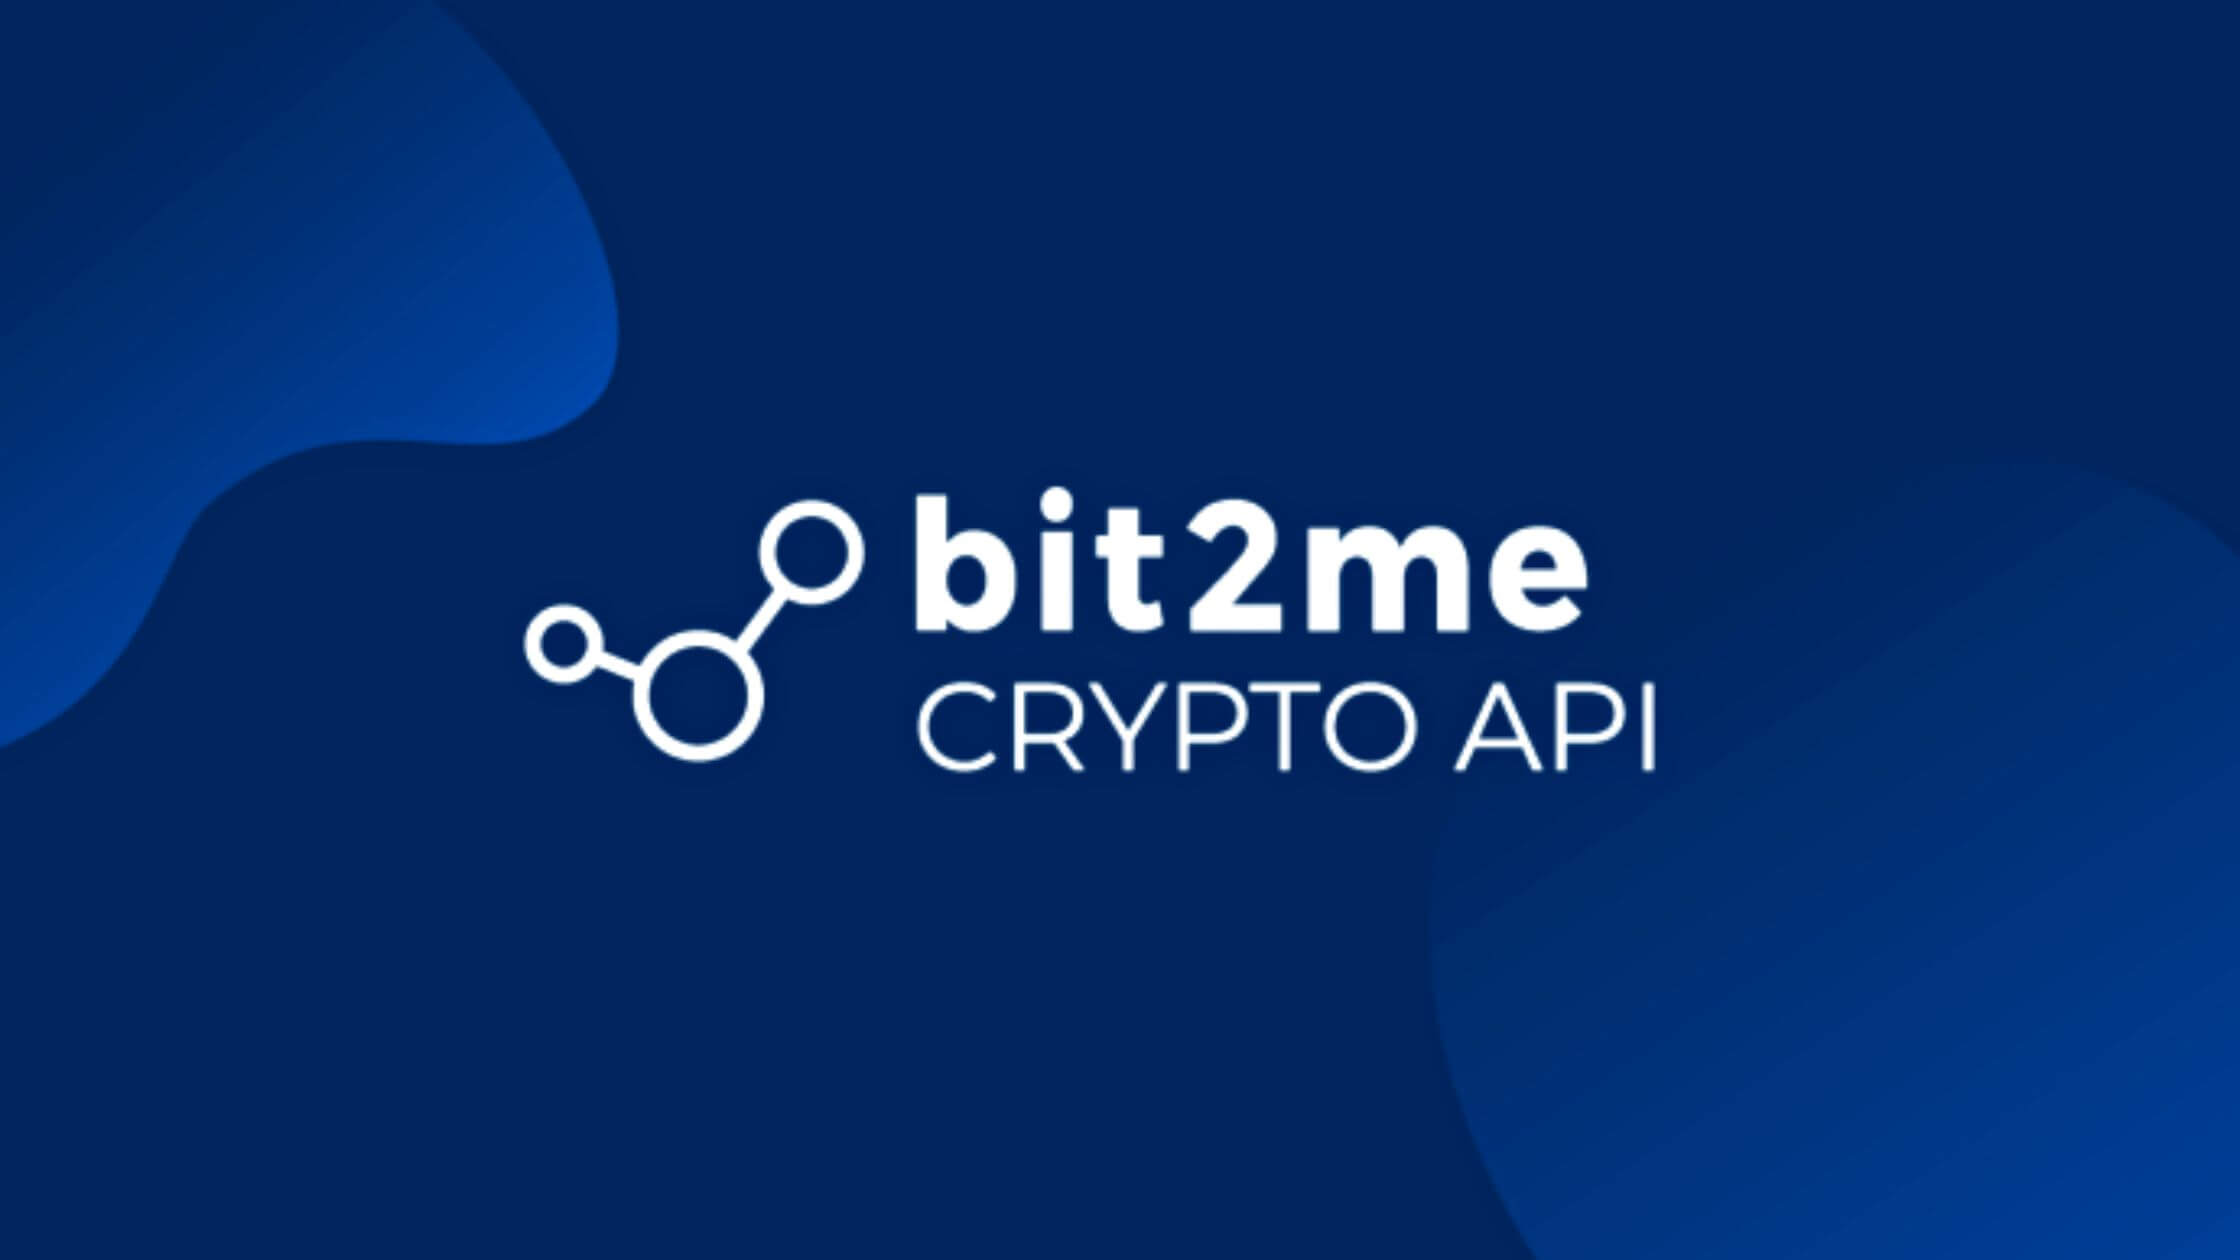 Bit2me lanza la Crypto API para bancos empresas y organismos publicos 3